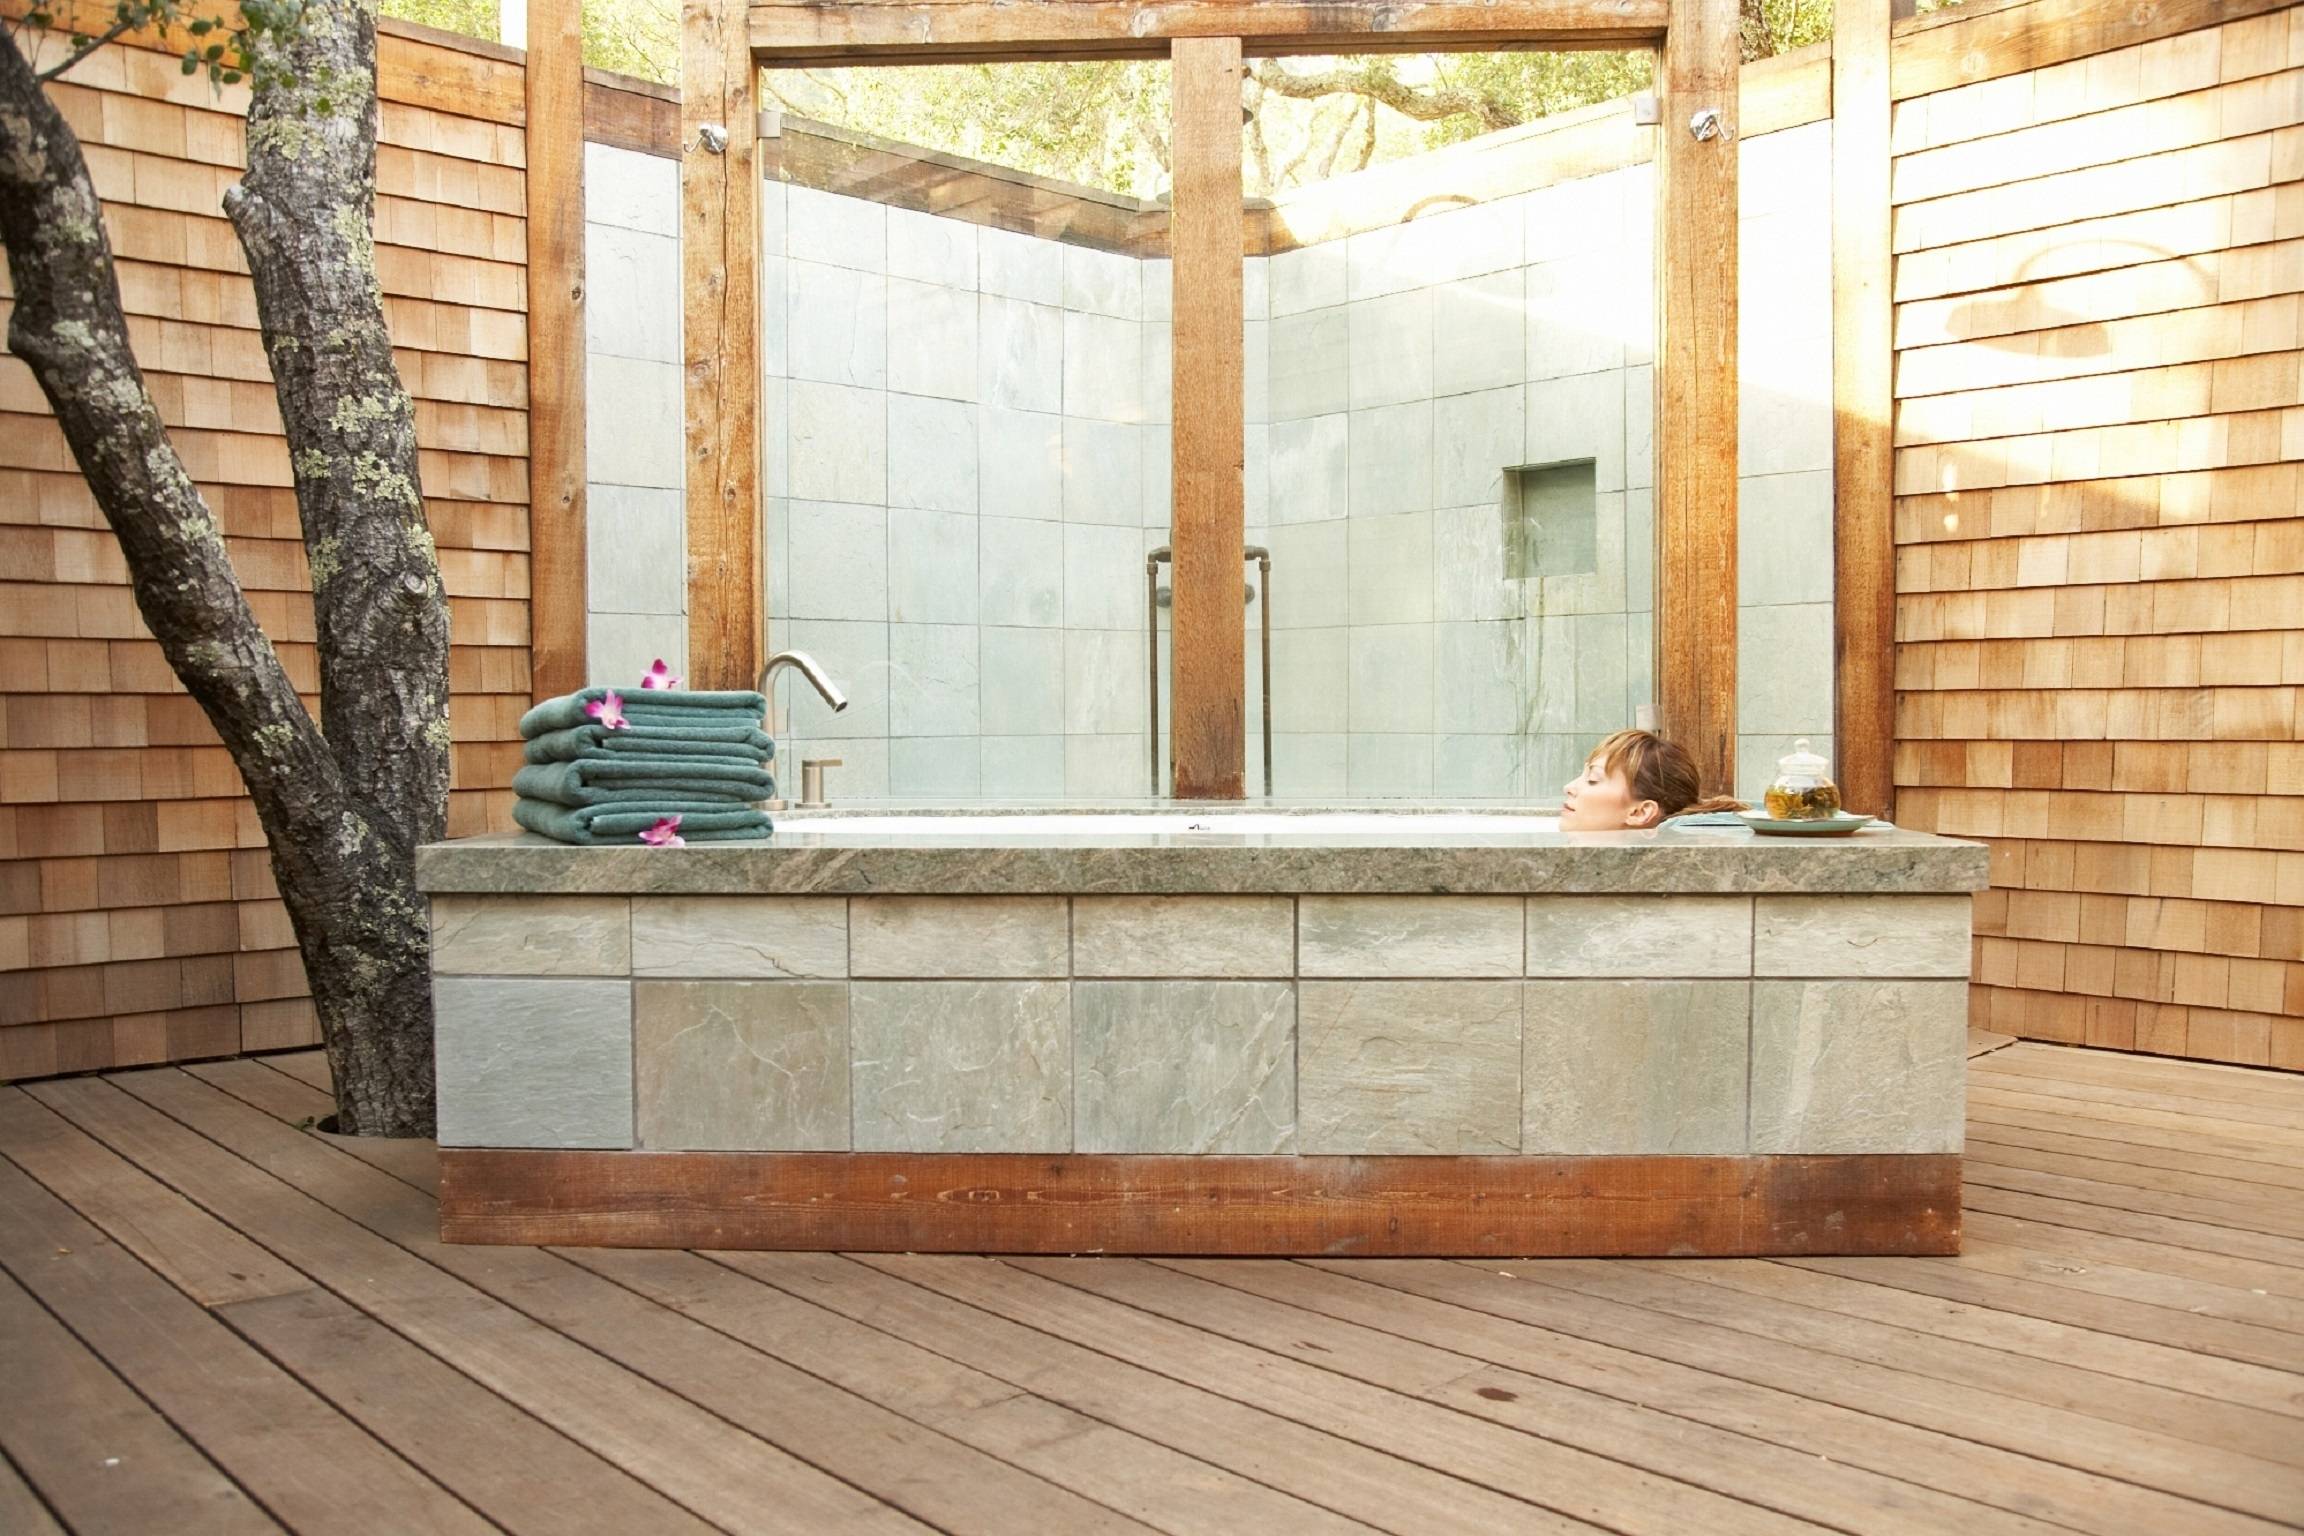 Погрузиться в красоту: 8 отелей со сказочной ванной